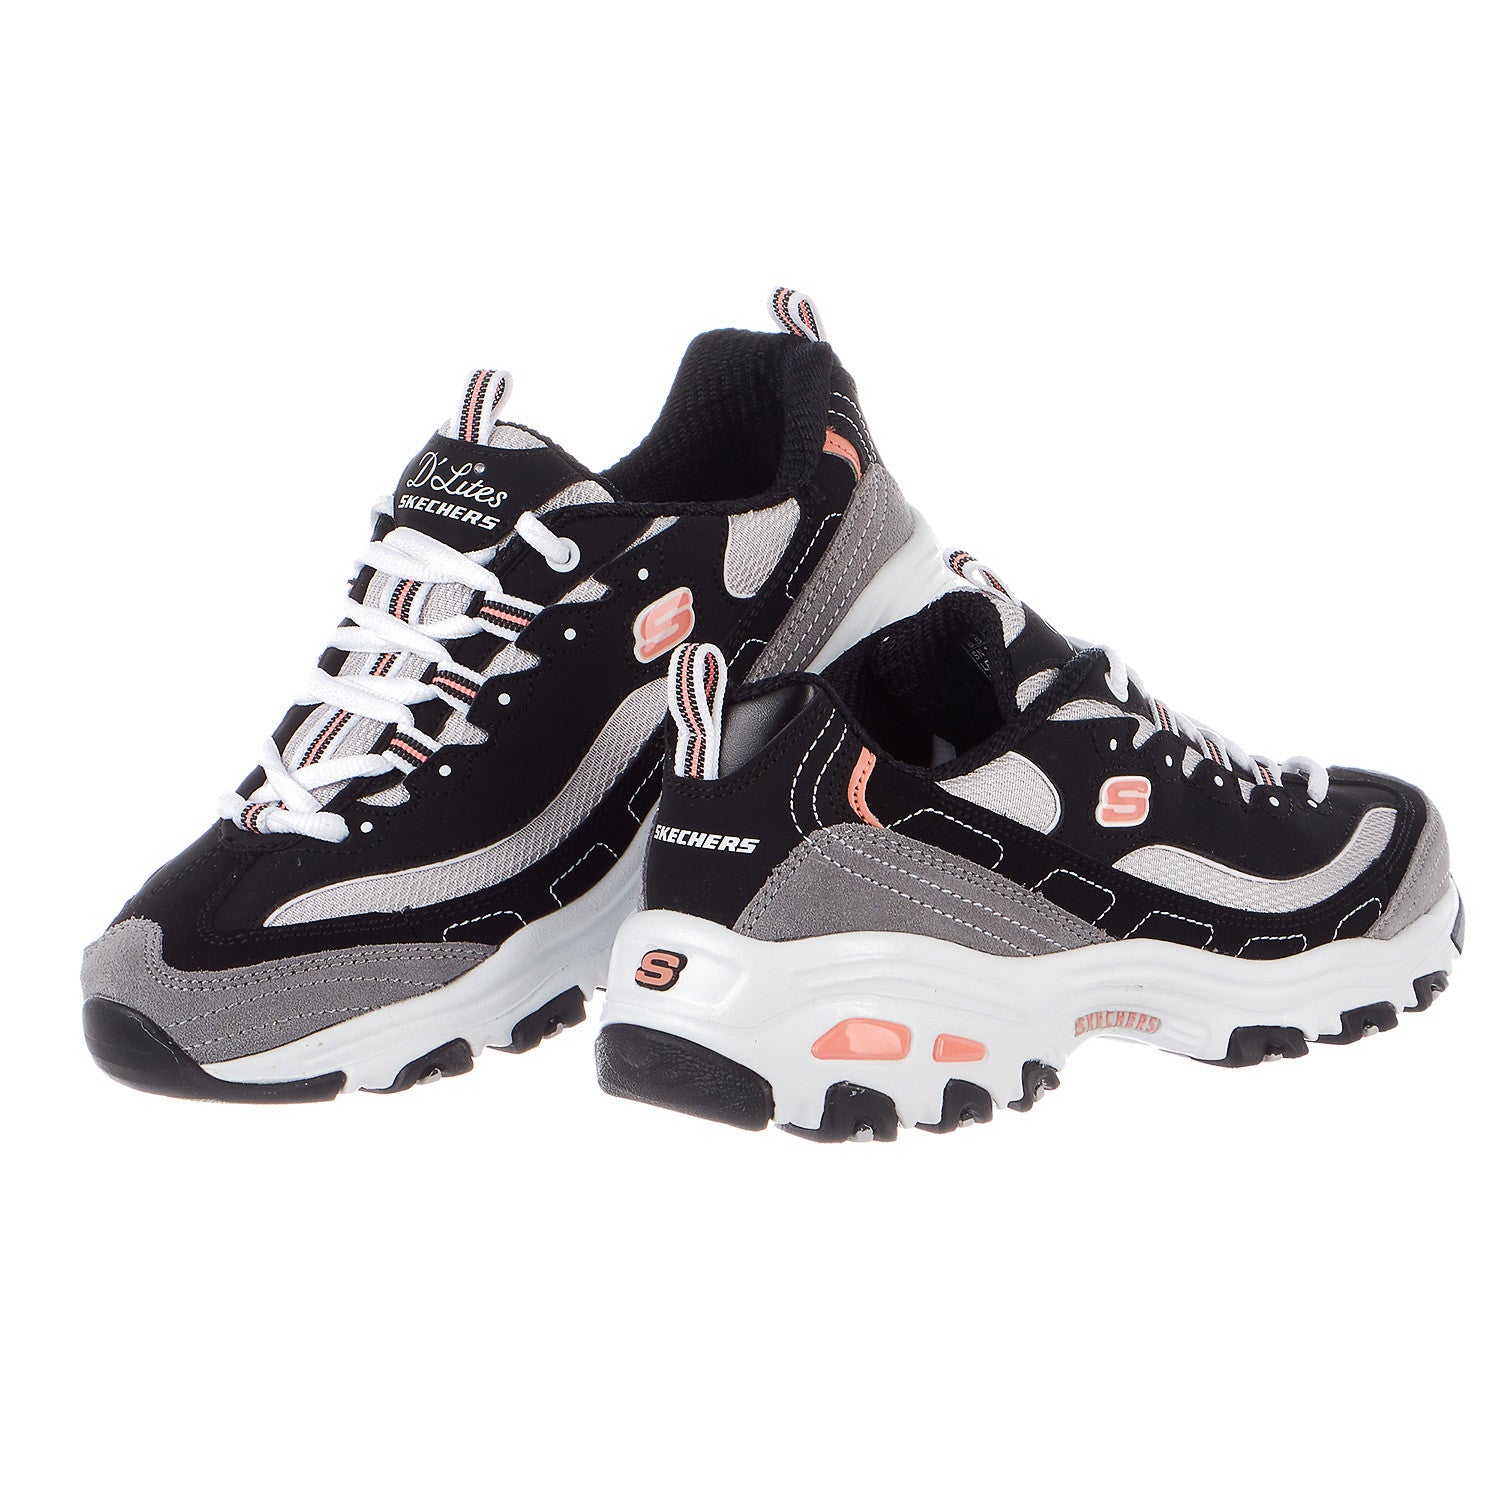 S Sport by Skechers Womens Size 11 Black & White Memory Foam Sneakers USED